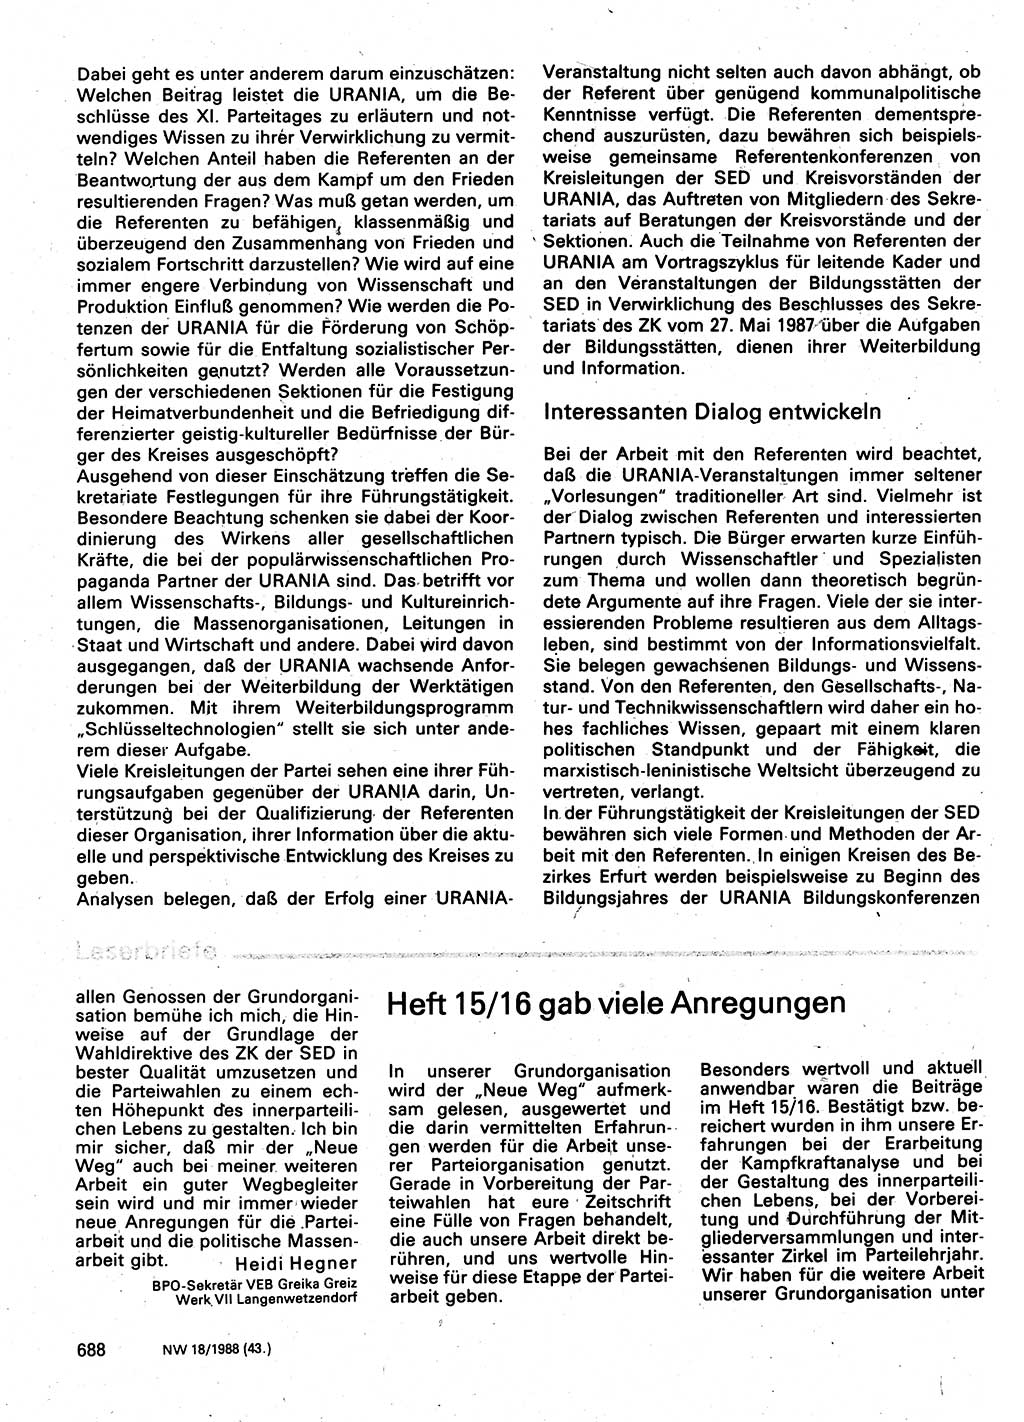 Neuer Weg (NW), Organ des Zentralkomitees (ZK) der SED (Sozialistische Einheitspartei Deutschlands) für Fragen des Parteilebens, 43. Jahrgang [Deutsche Demokratische Republik (DDR)] 1988, Seite 688 (NW ZK SED DDR 1988, S. 688)